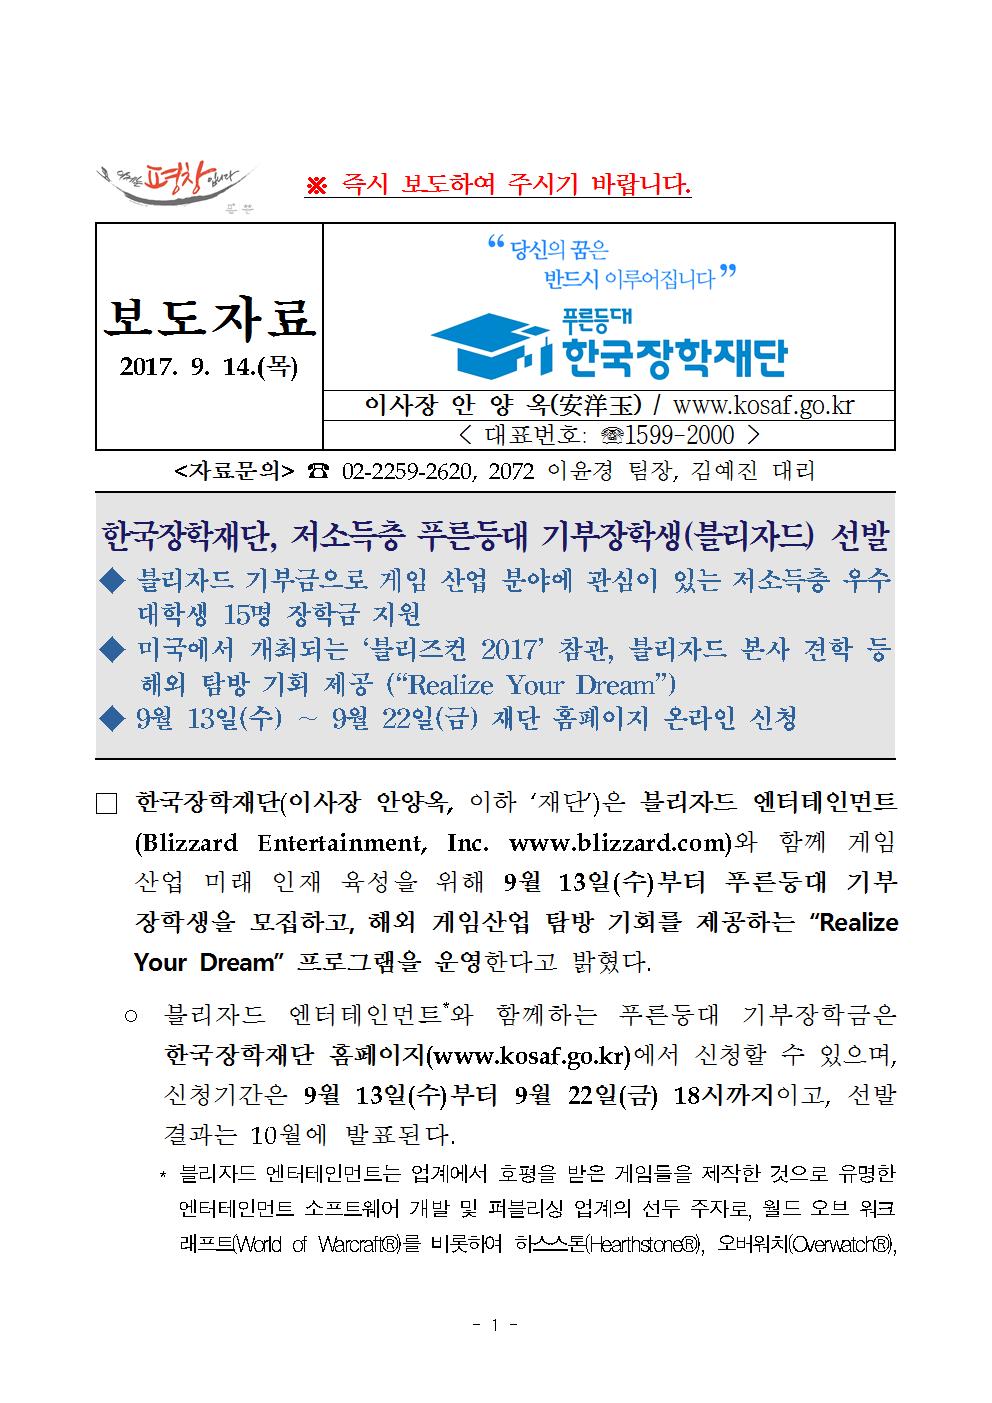 09-14(목)[보도자료] 한국장학재단, 저소득층 푸른등대 기부장학생(블리자드) 선발001.jpg